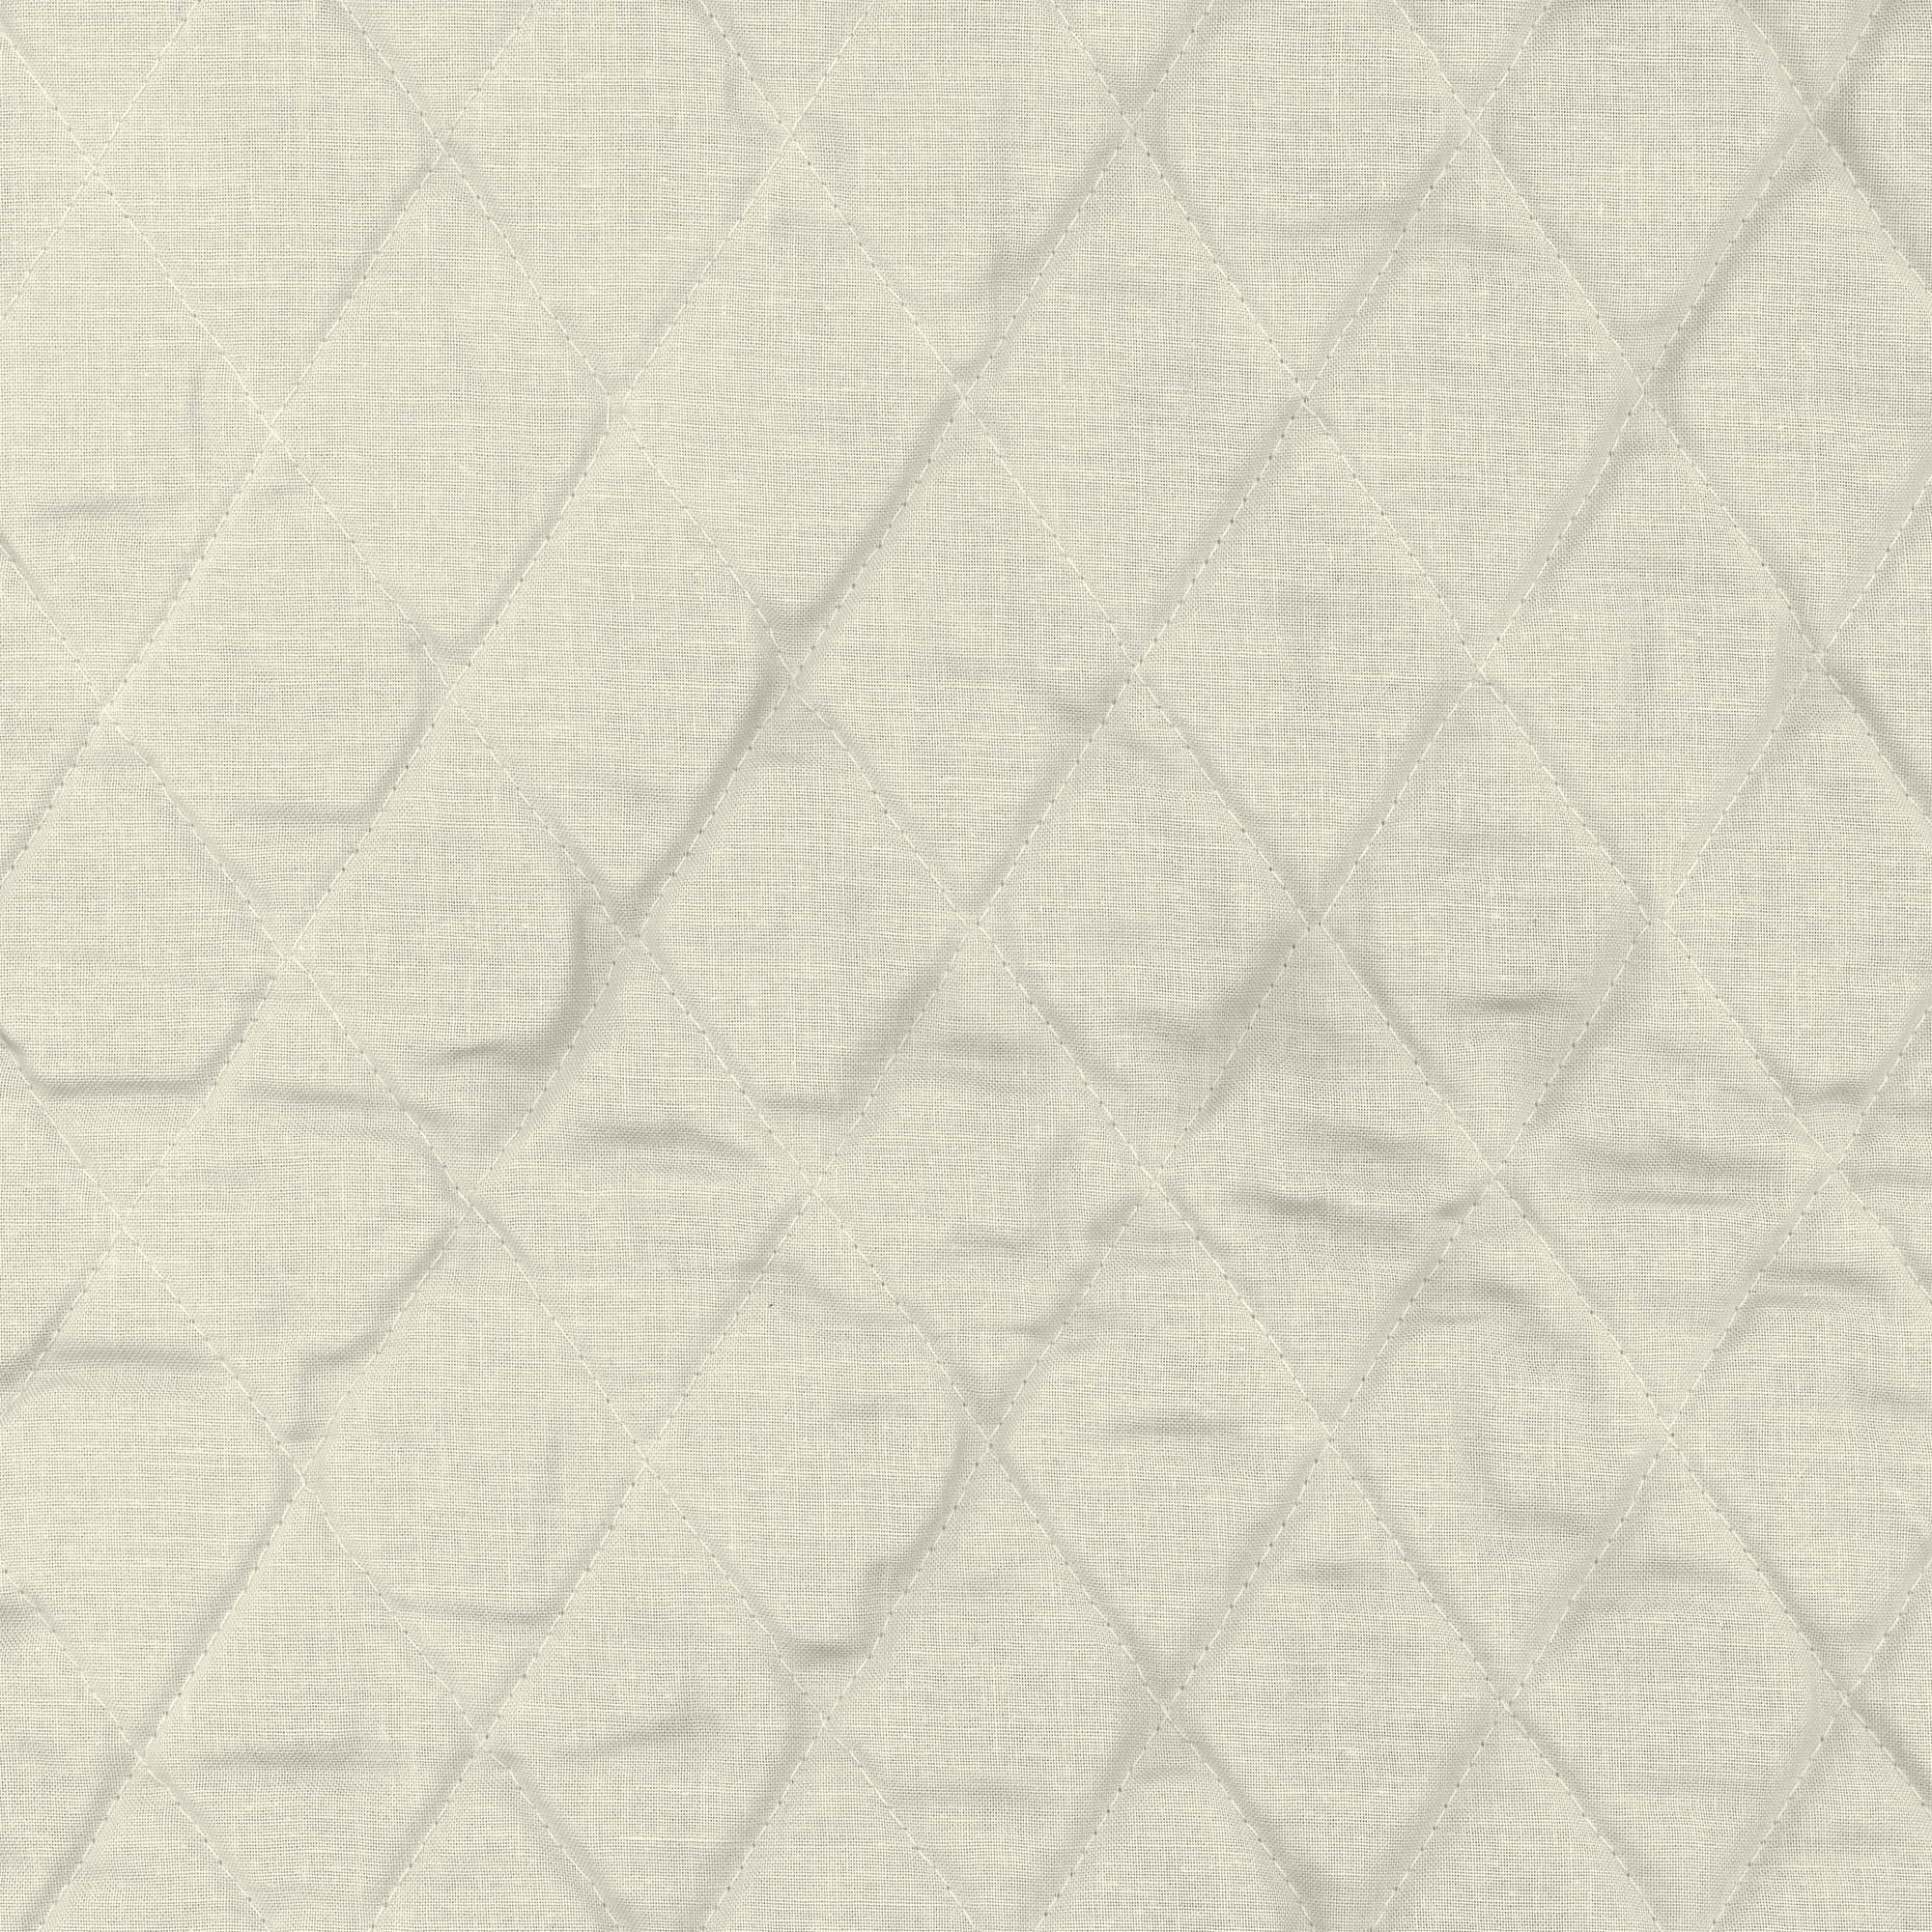 Star Wars 42"W x 1/2 YD L cotton fabric. 